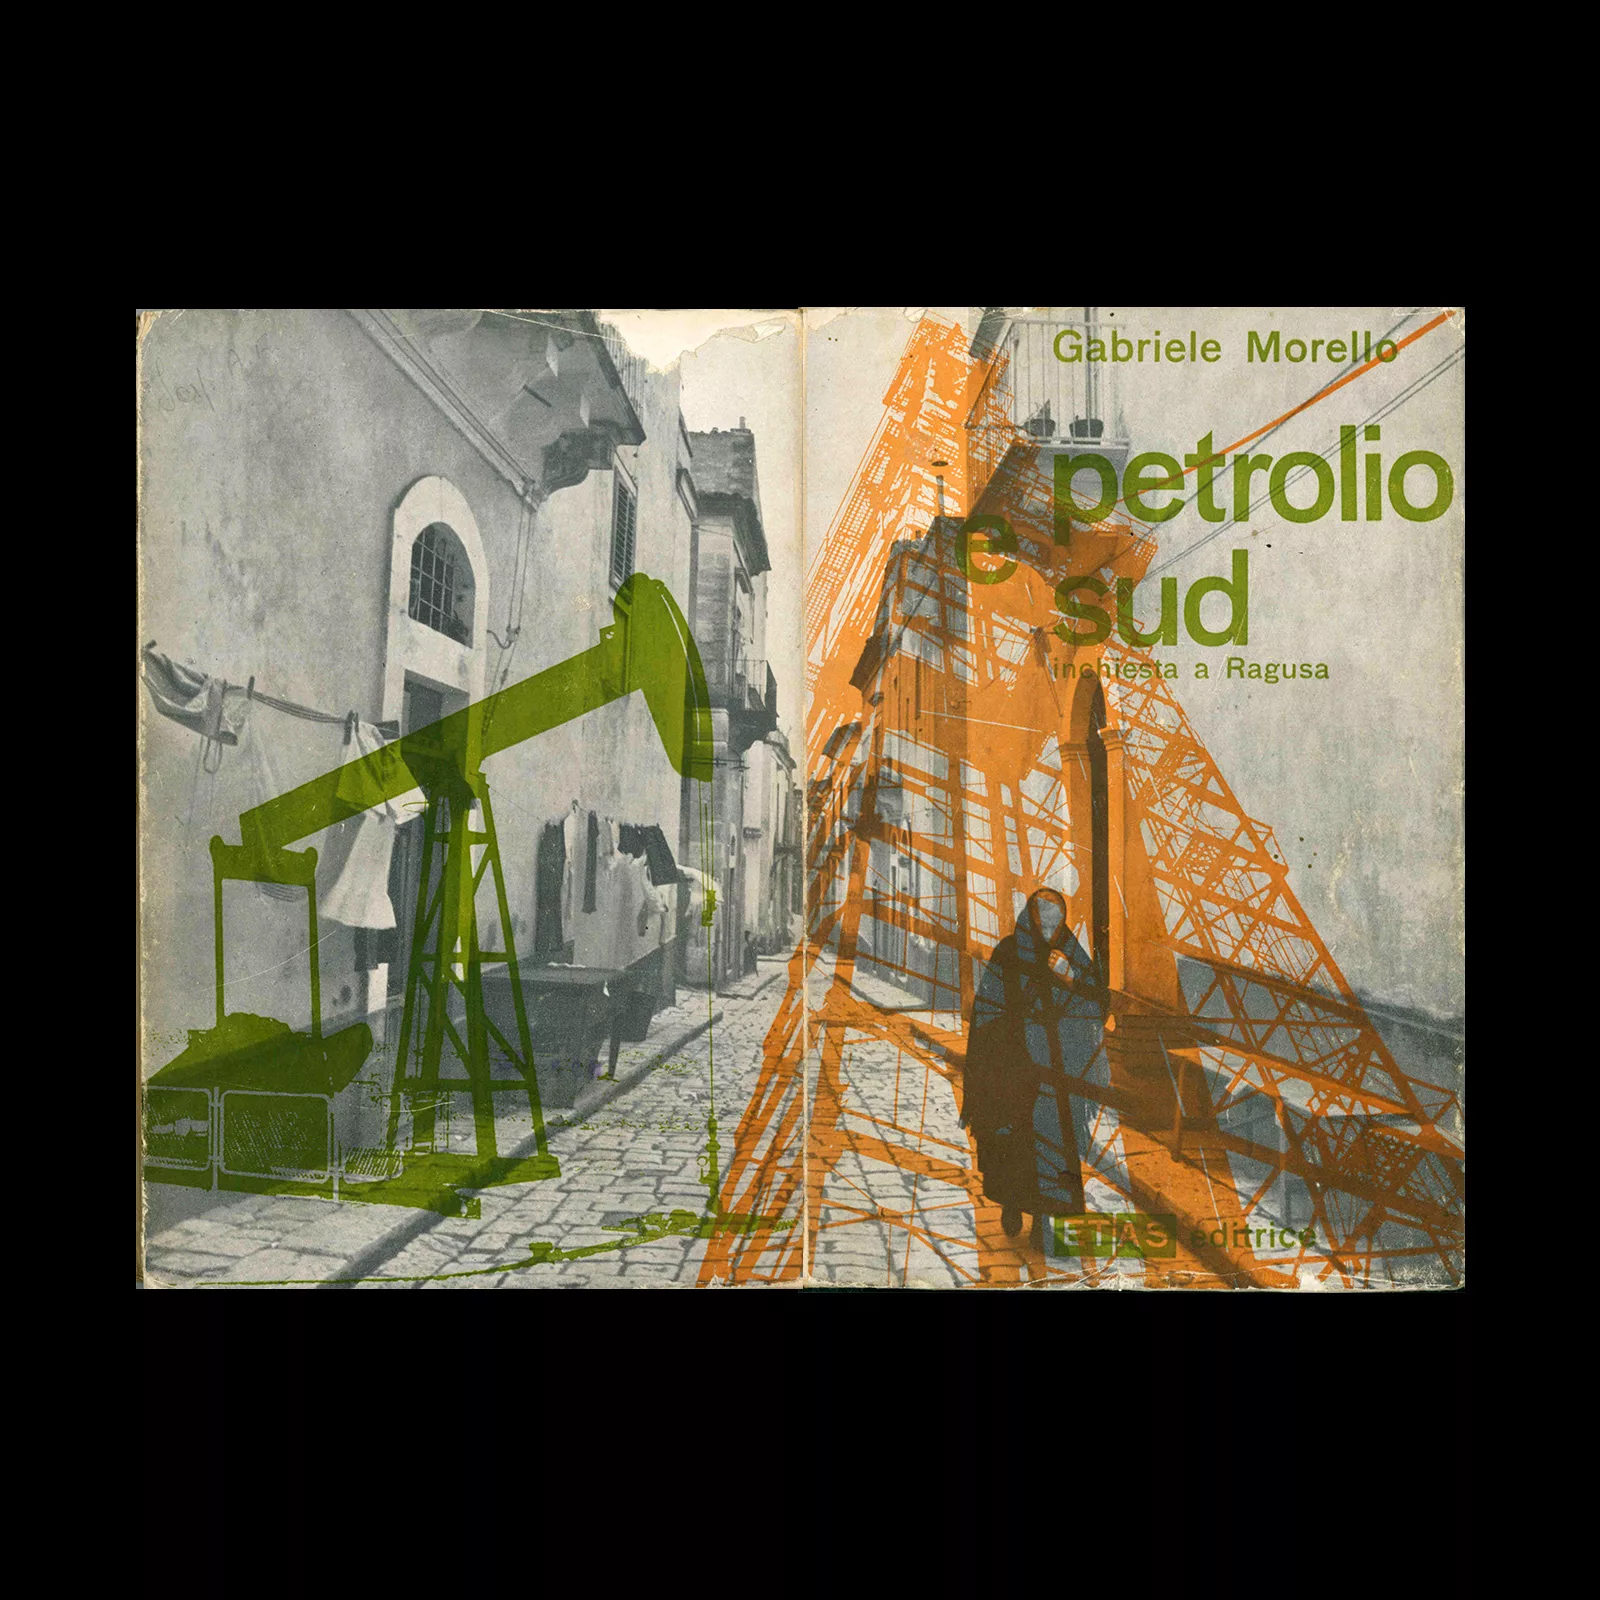 Gabriele Morello - Petrolio e Sud. Milano, Etas Editrice, 1959. Cover design by Max Huber